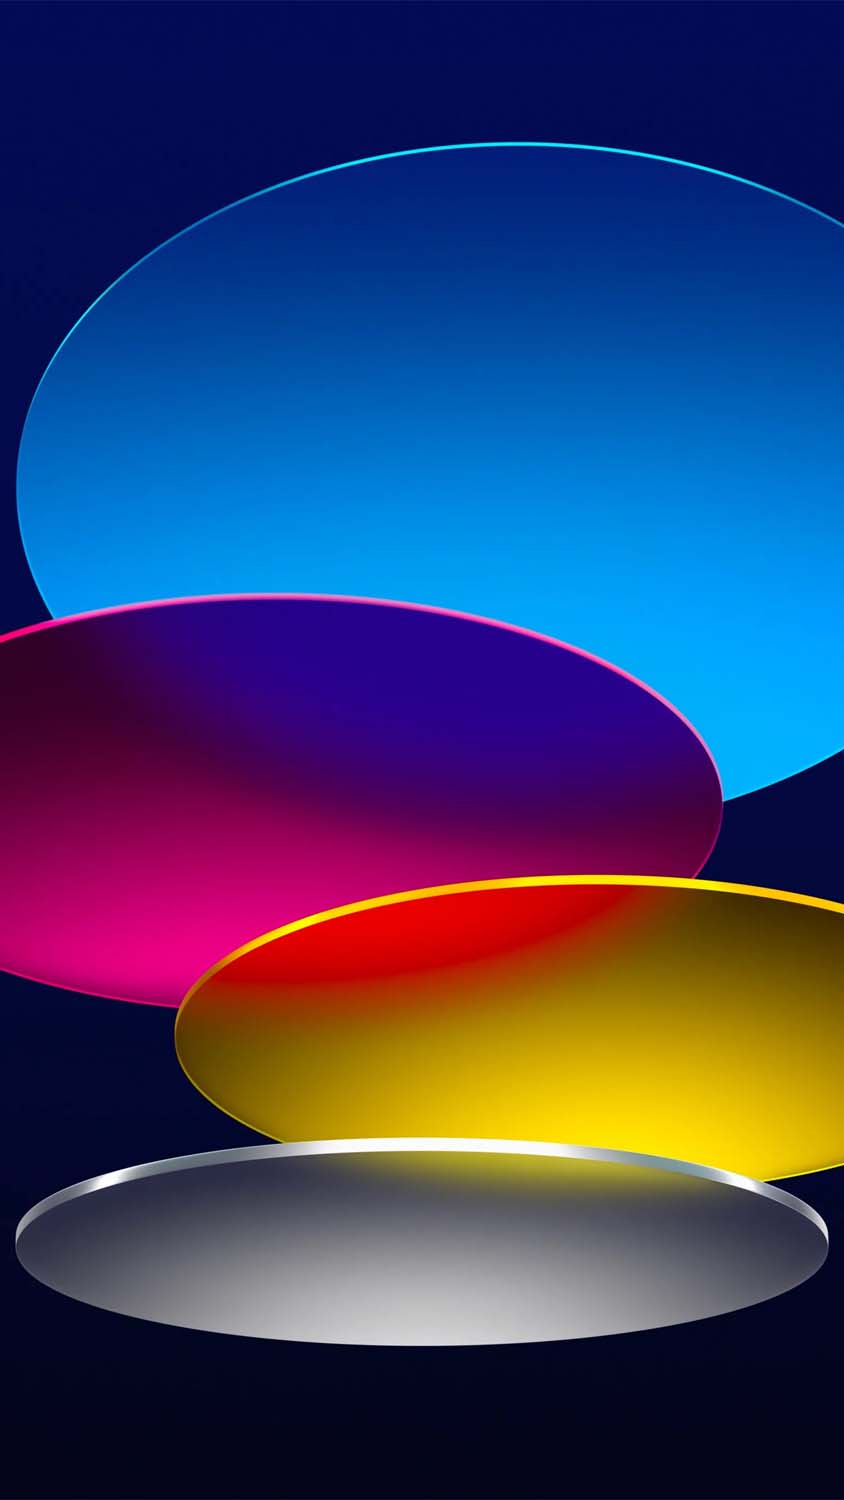 Circles Blue Dark iPad Air iPhone Wallpaper 4K